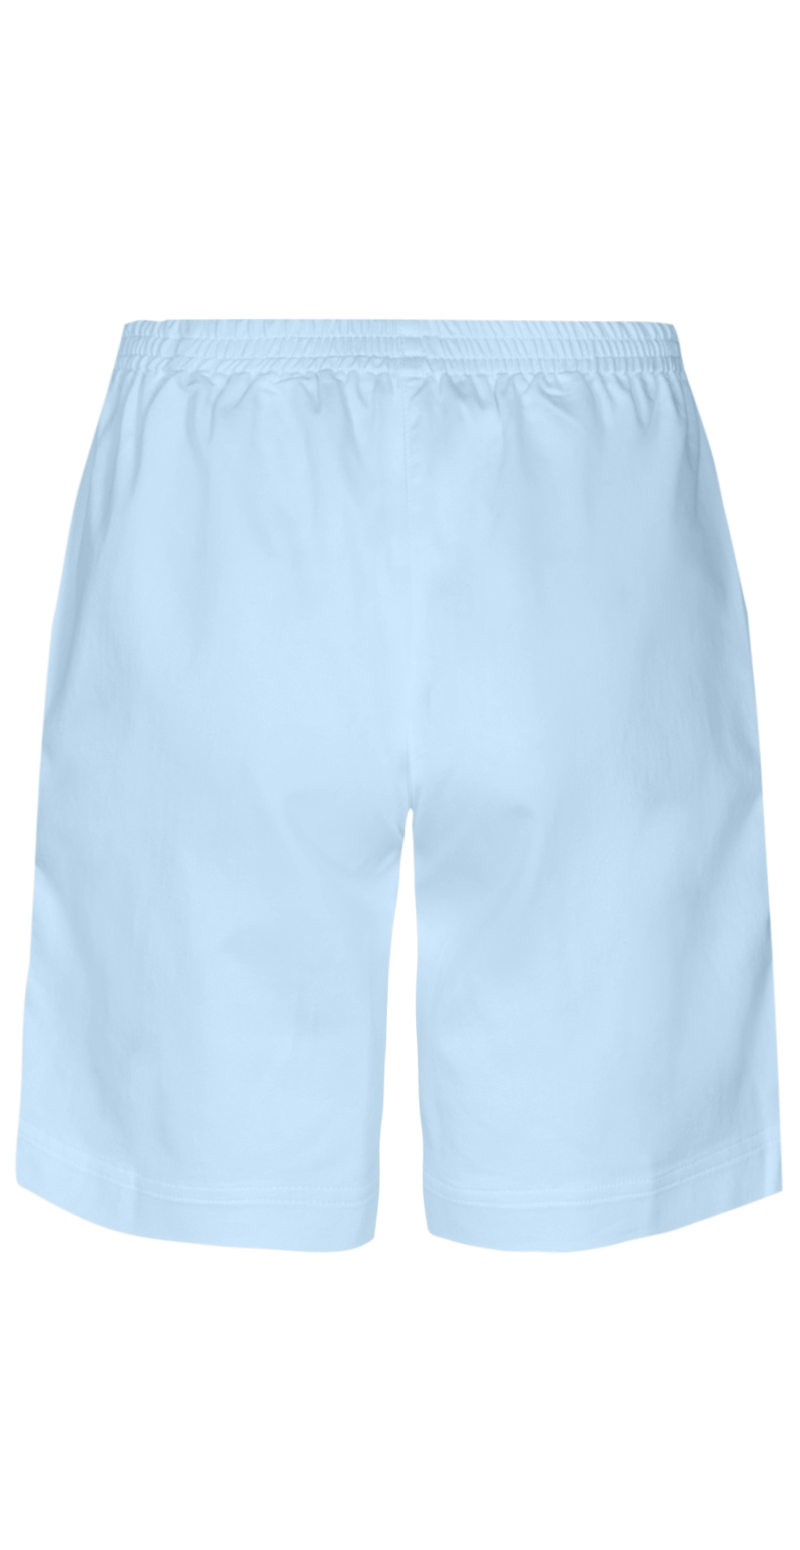 Lily shorts med elastik og detaljer lysblå